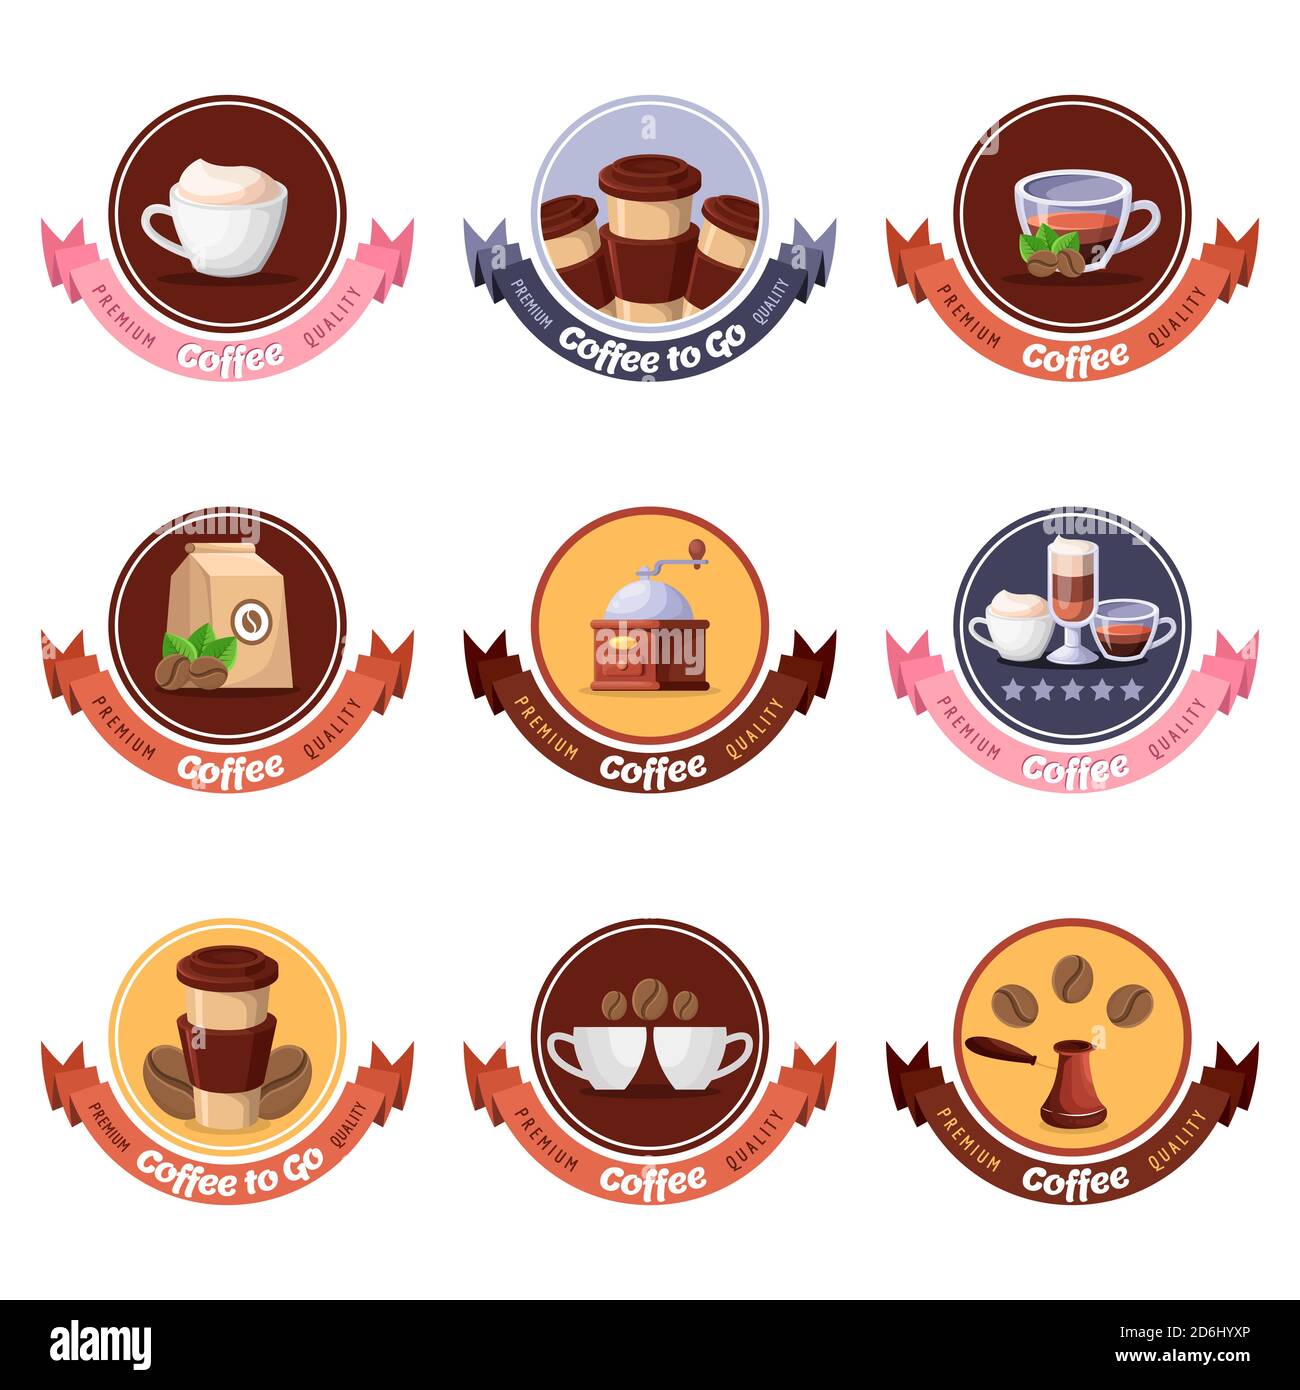 Logo vettoriale, etichetta circolare, adesivo, set di emblemi. Il menu della colazione del caffè o del ristorante ha elementi di design isolati. Illustrazione cartoon. Illustrazione Vettoriale